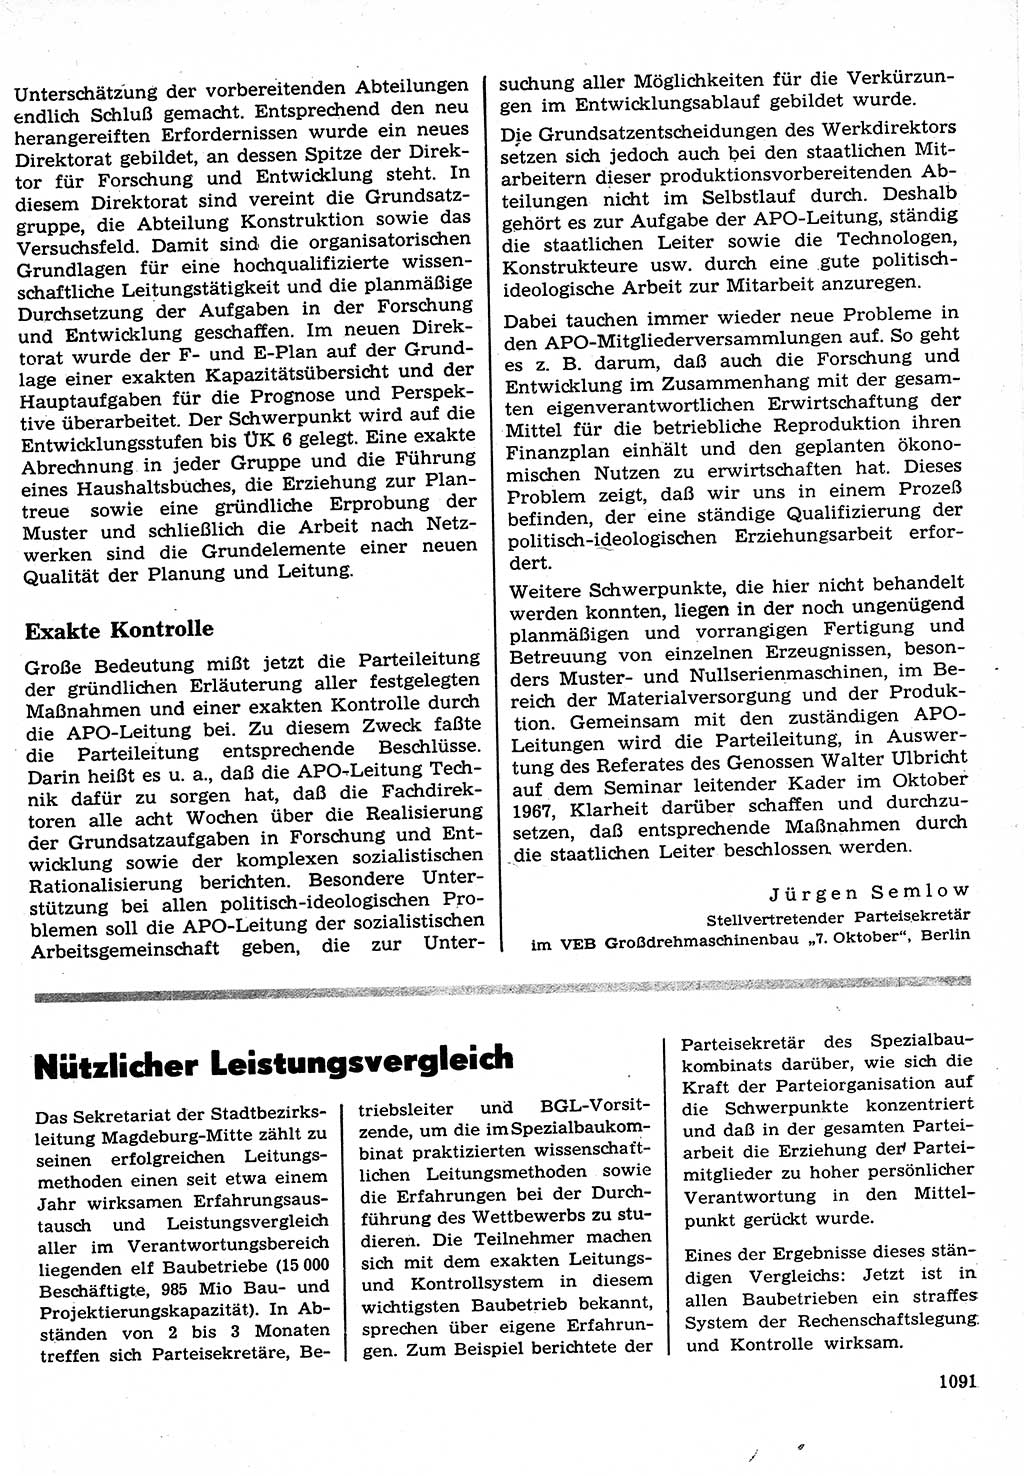 Neuer Weg (NW), Organ des Zentralkomitees (ZK) der SED (Sozialistische Einheitspartei Deutschlands) für Fragen des Parteilebens, 22. Jahrgang [Deutsche Demokratische Republik (DDR)] 1967, Seite 1091 (NW ZK SED DDR 1967, S. 1091)